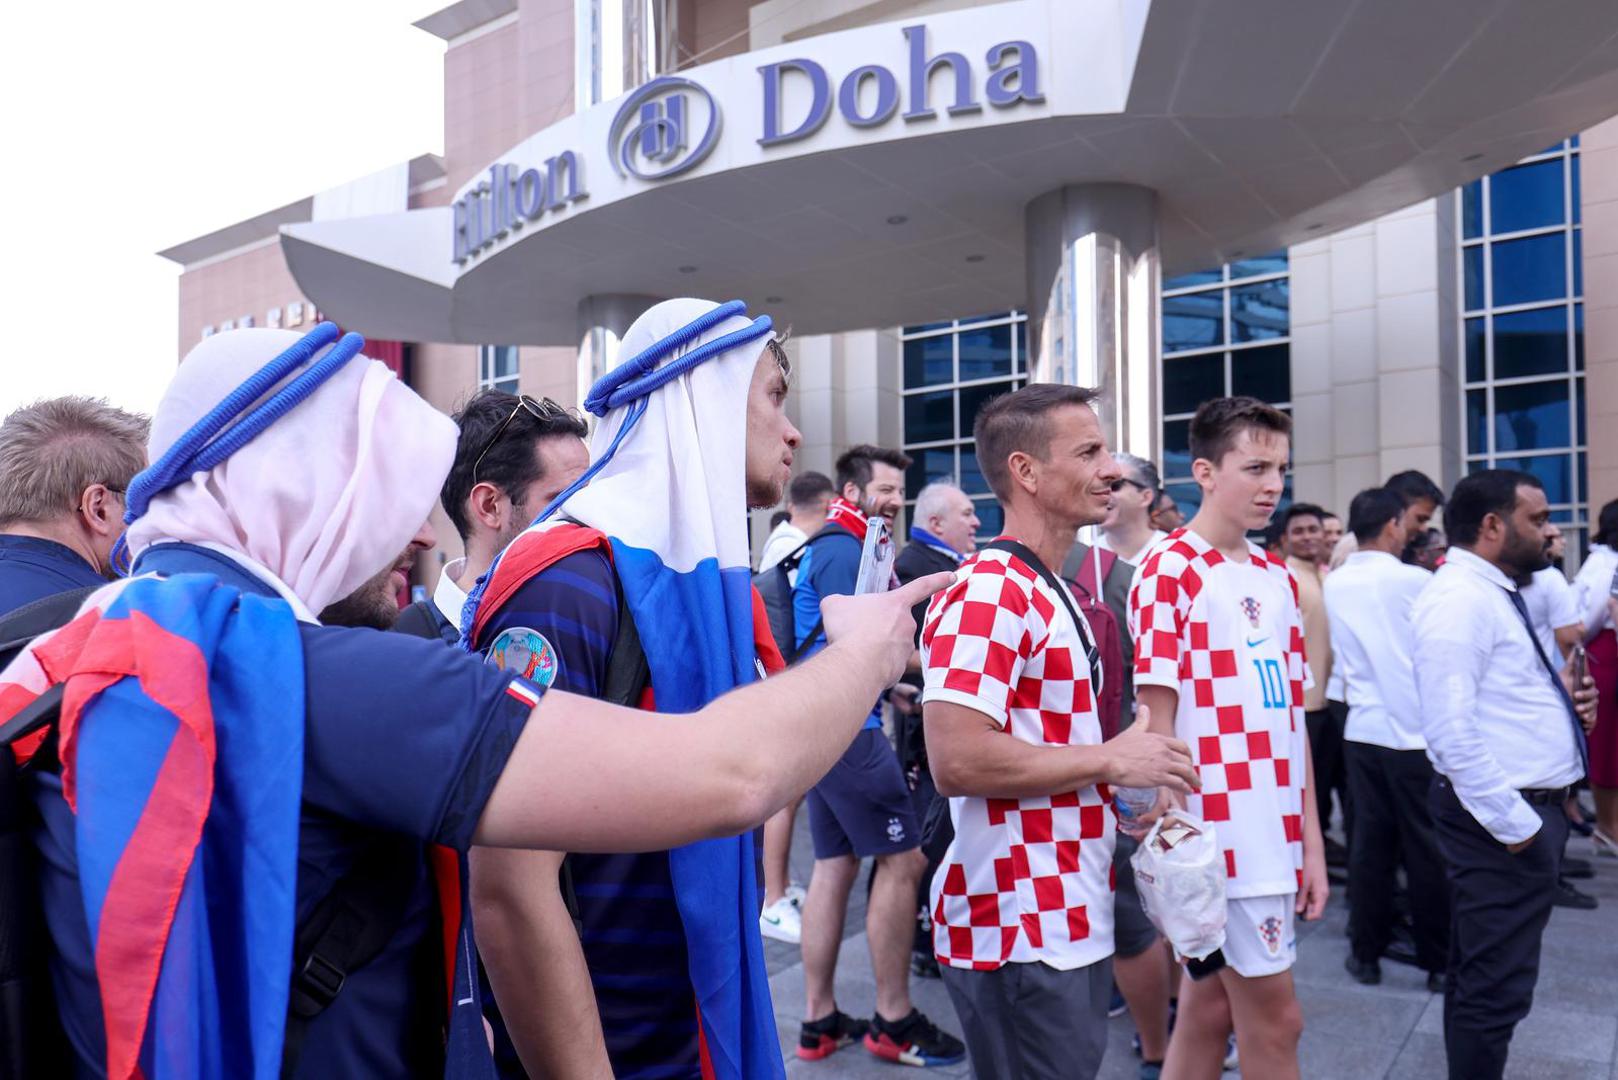 18.12.2022., Doha, Katar - Hrvatska nogometna reprezentacija otputovala je iz hotela Hilton Doha prema zracnoj luci, nakon jucerasnjeg osvajanja broncane medalje u utakmici protiv Maroka, na Svjetskom nogometnom prvenstvu Katar 2022. Photo: Igor Kralj/PIXSELL